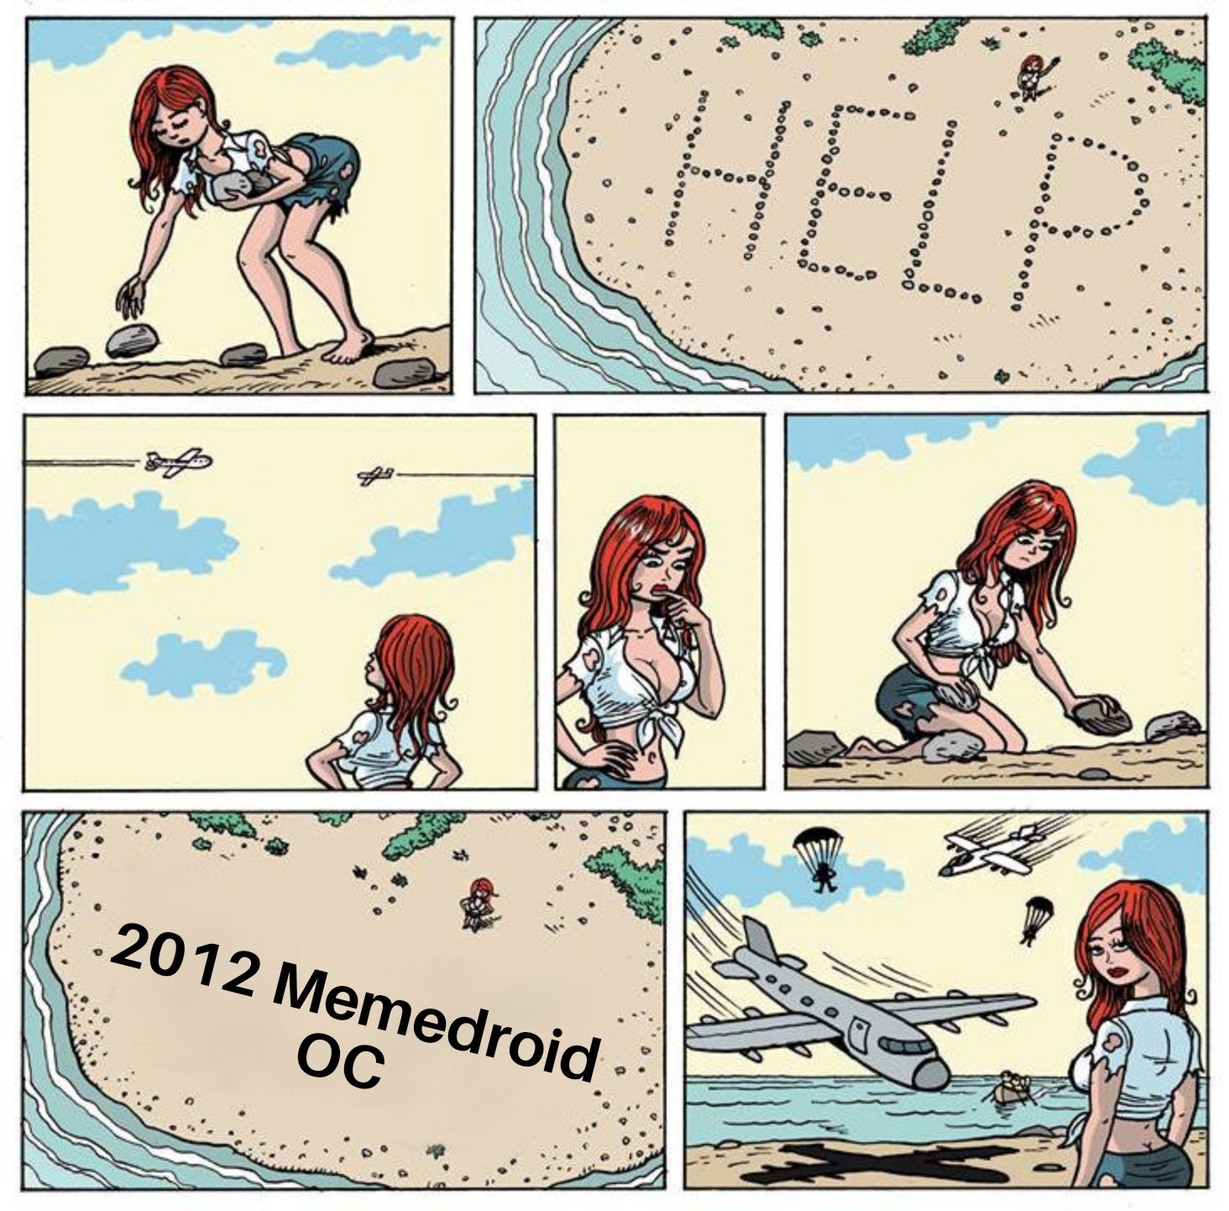 2017 OC - meme